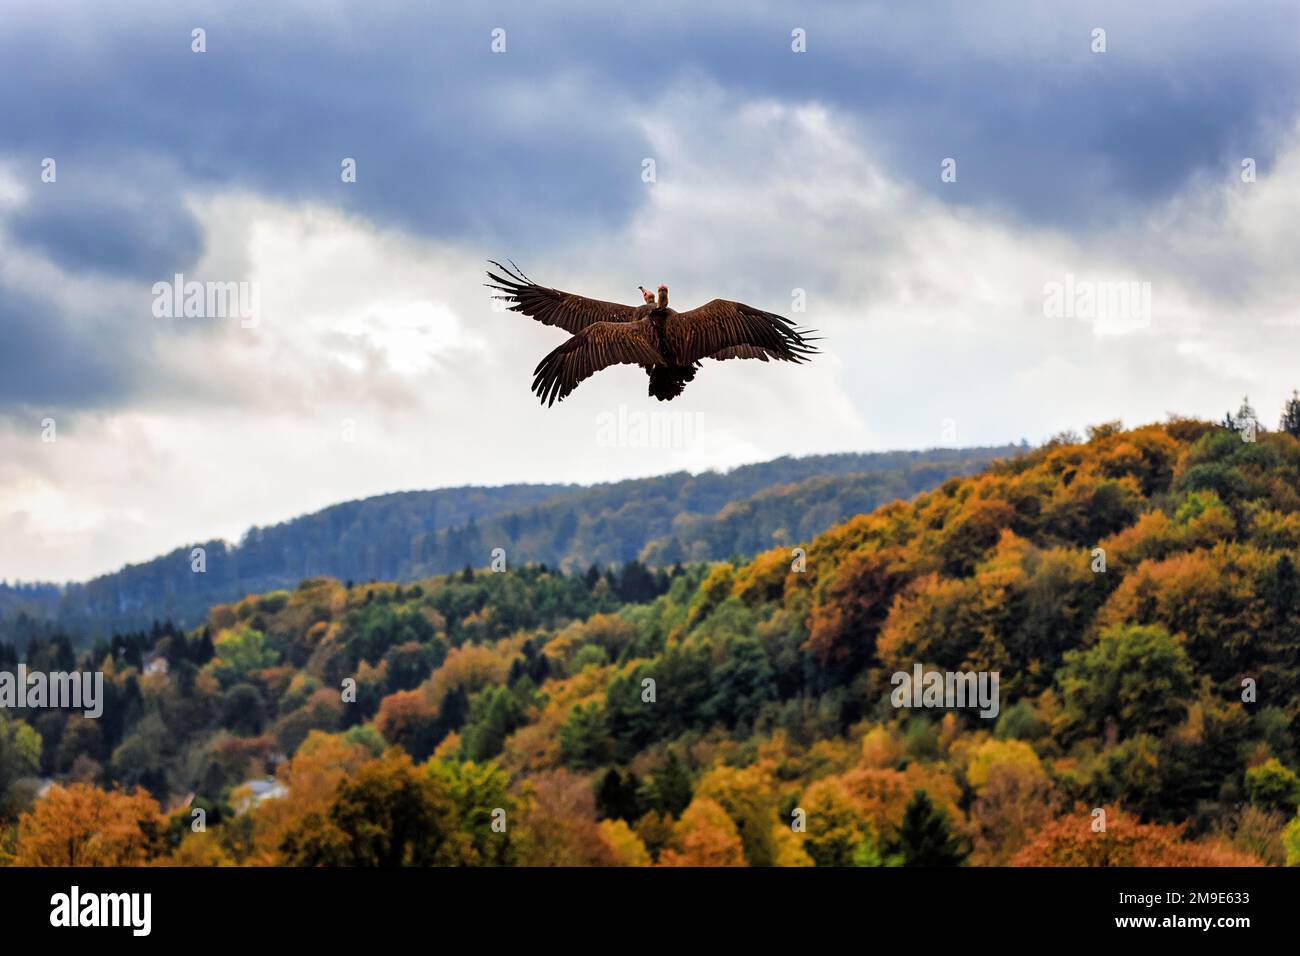 Deux vautour à capuchon (Necrosyrtes monachus) volant dans le ciel nuageux au-dessus de la forêt d'automne, captifs, Parc ornithologique, Adlerwart Berlebeck, Detmold, Nord Banque D'Images